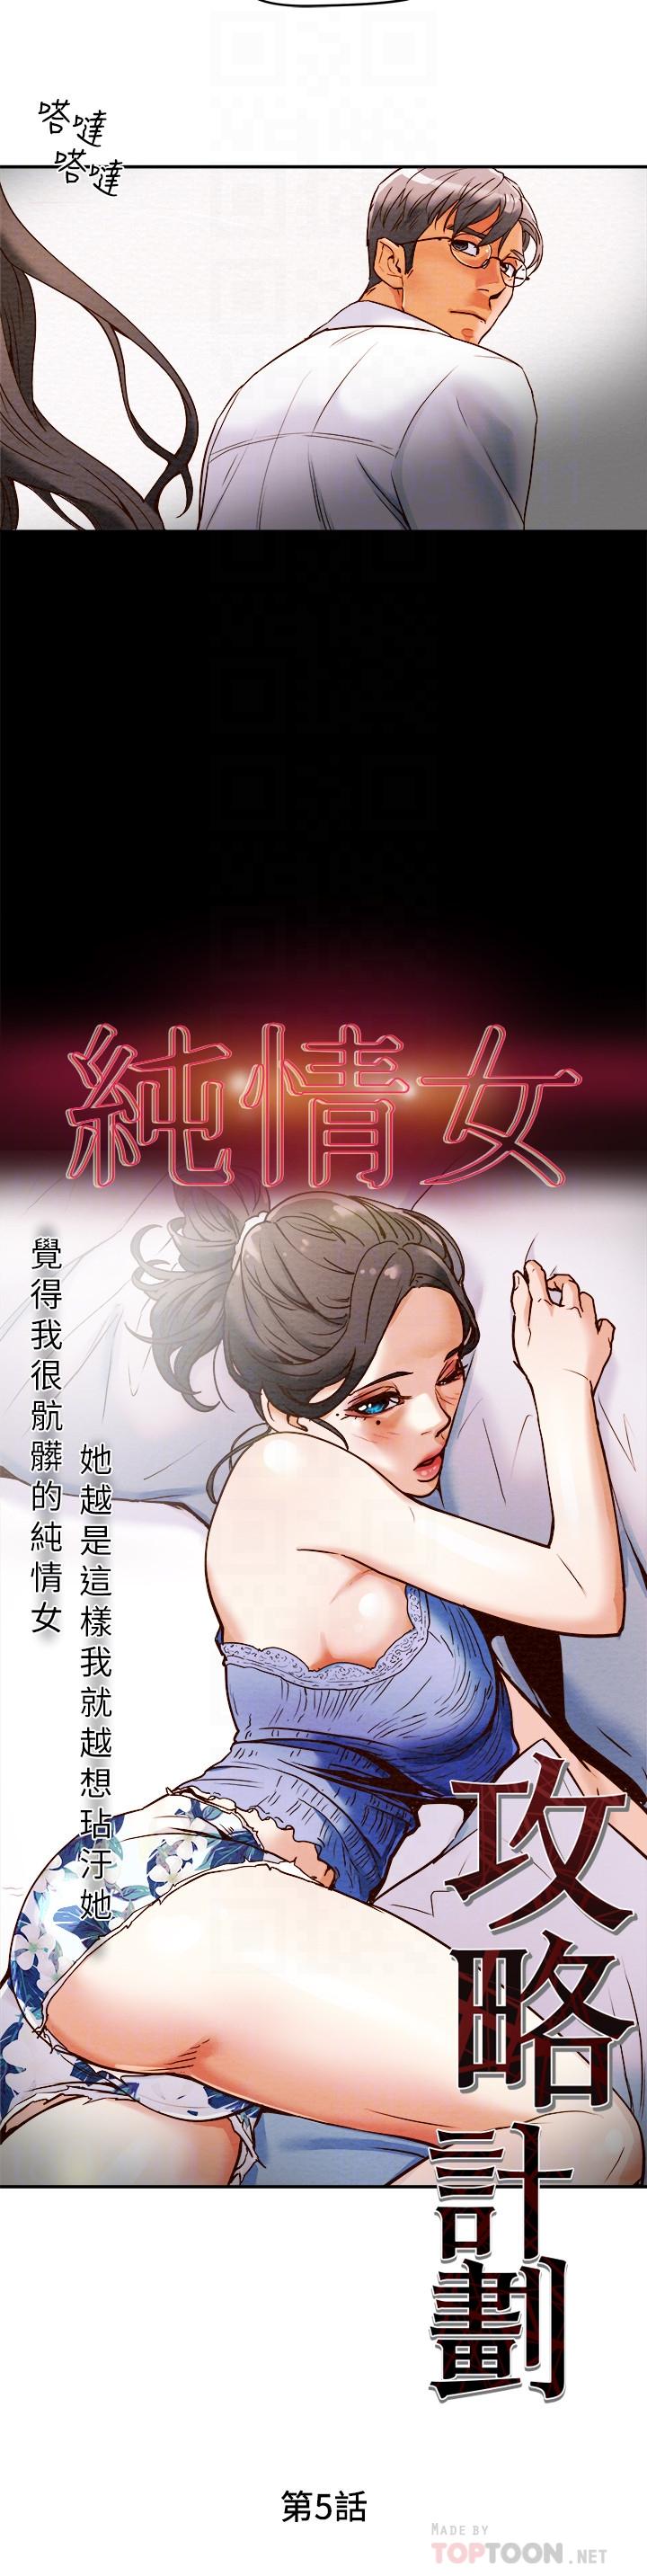 韩国污漫画 純情女攻略計劃 第5话-临停路边的刺激车震 6